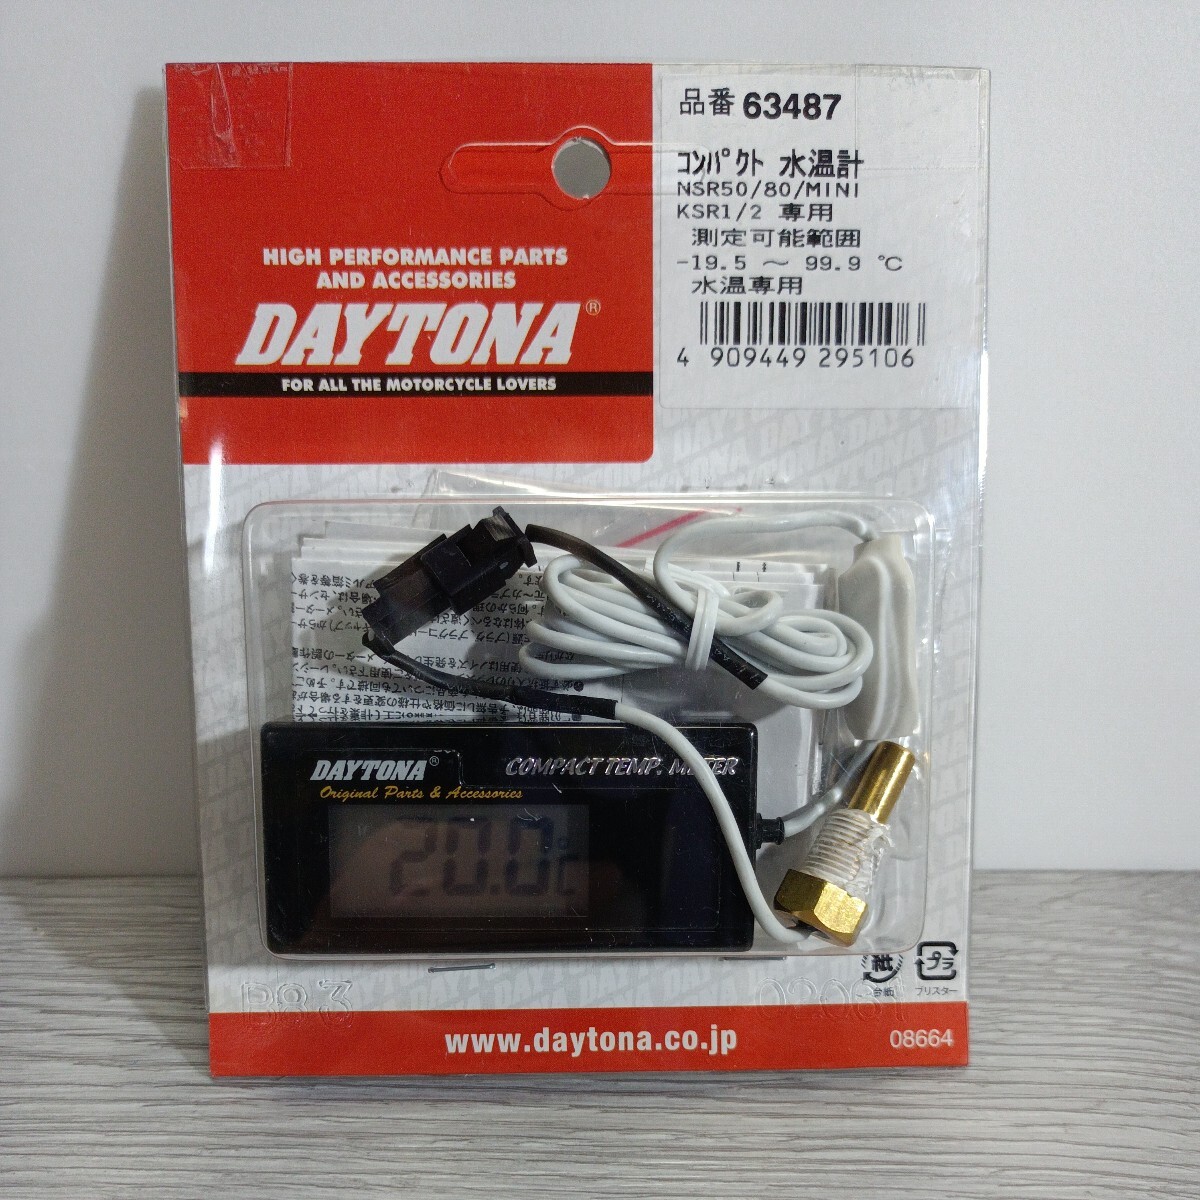 y042608fk デイトナ(Daytona) コンパクトテンプメーター 水温専用(-19.5-99.9度)※ノイズカットフィルター付き。 63487